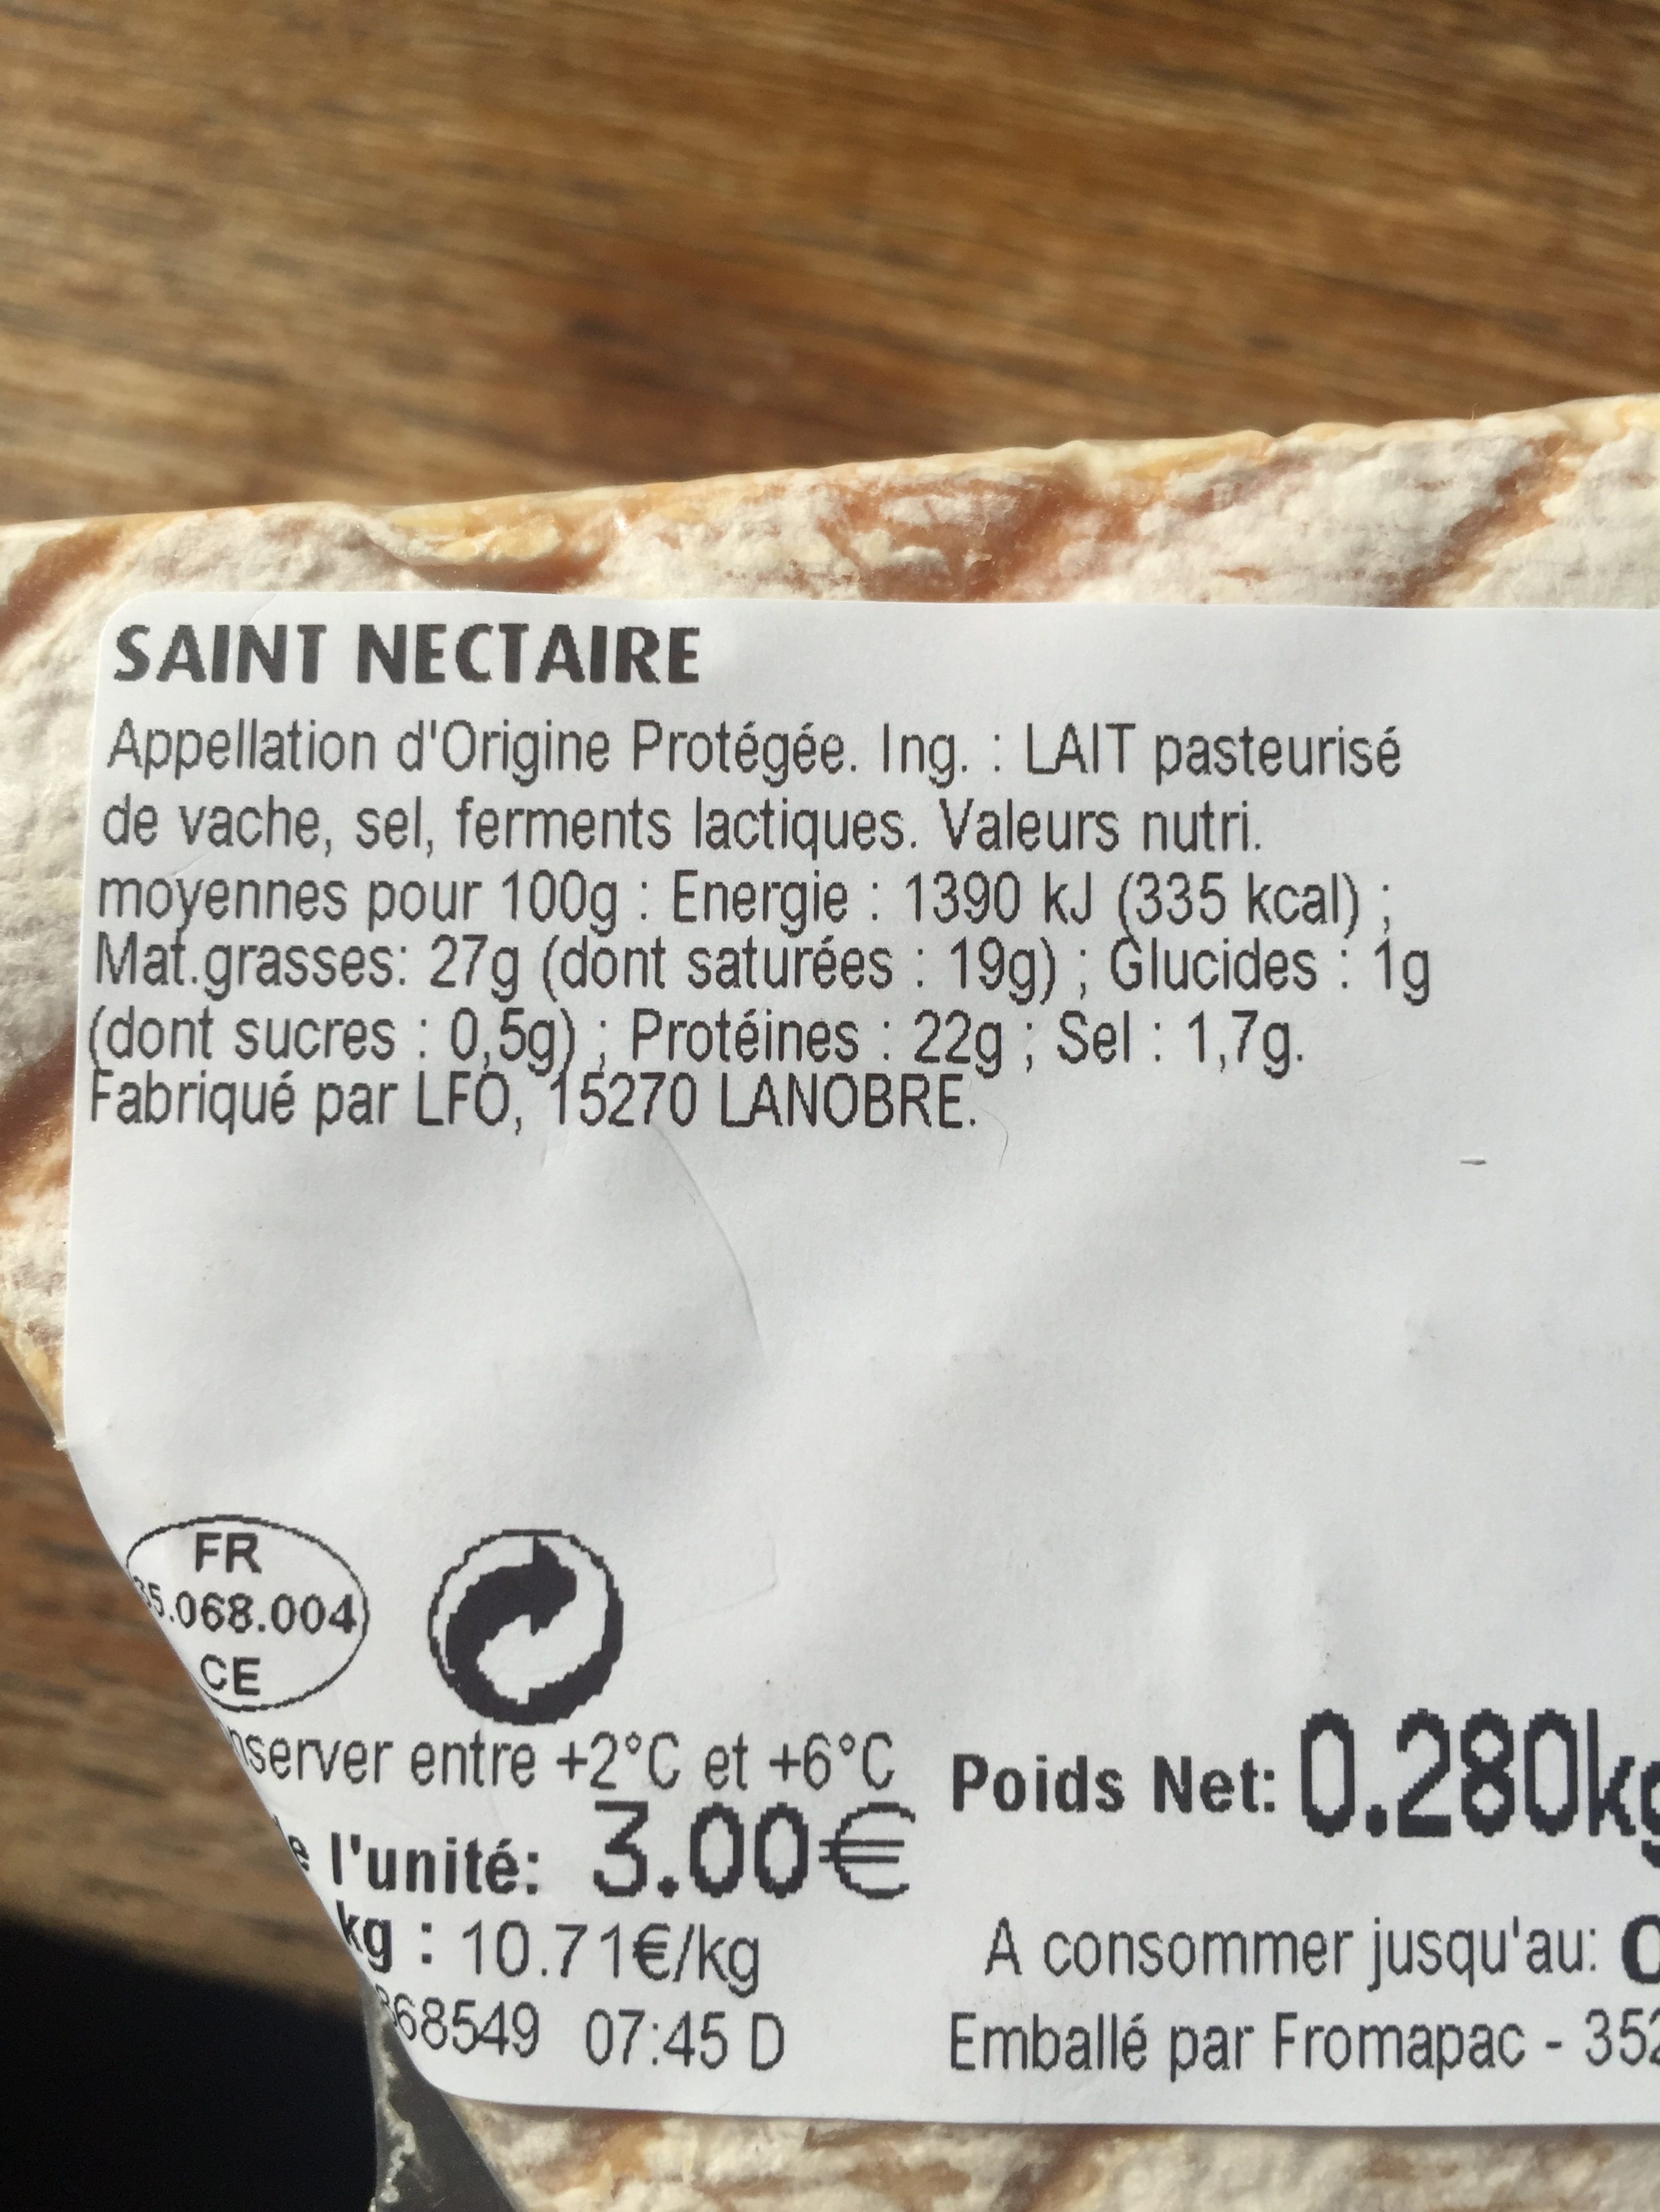 Saint nectaire - Ingrédients